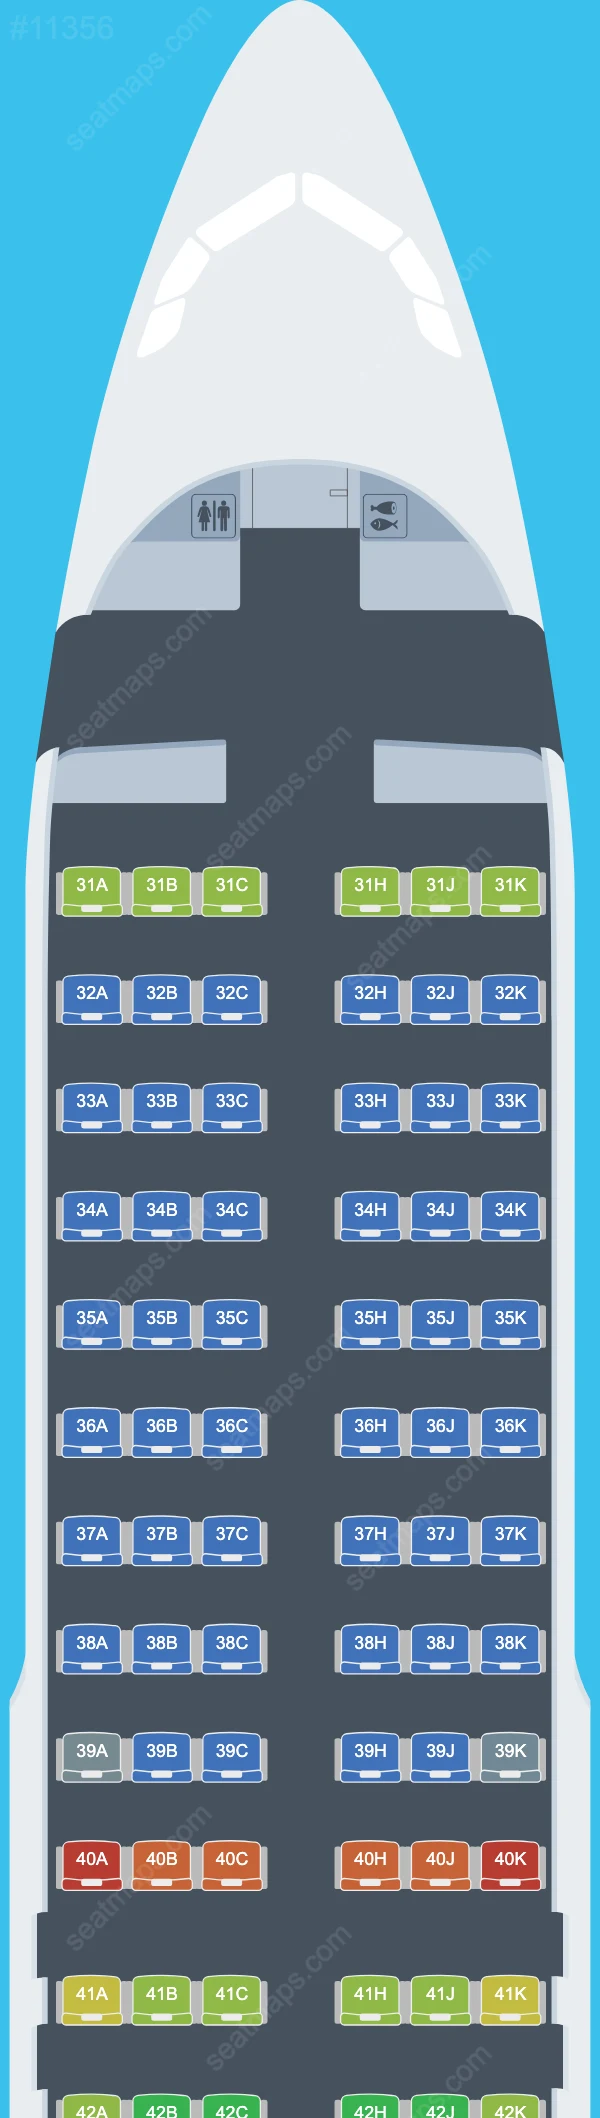 Thai Airways International Airbus A320 Seat Maps A320-200 V.2